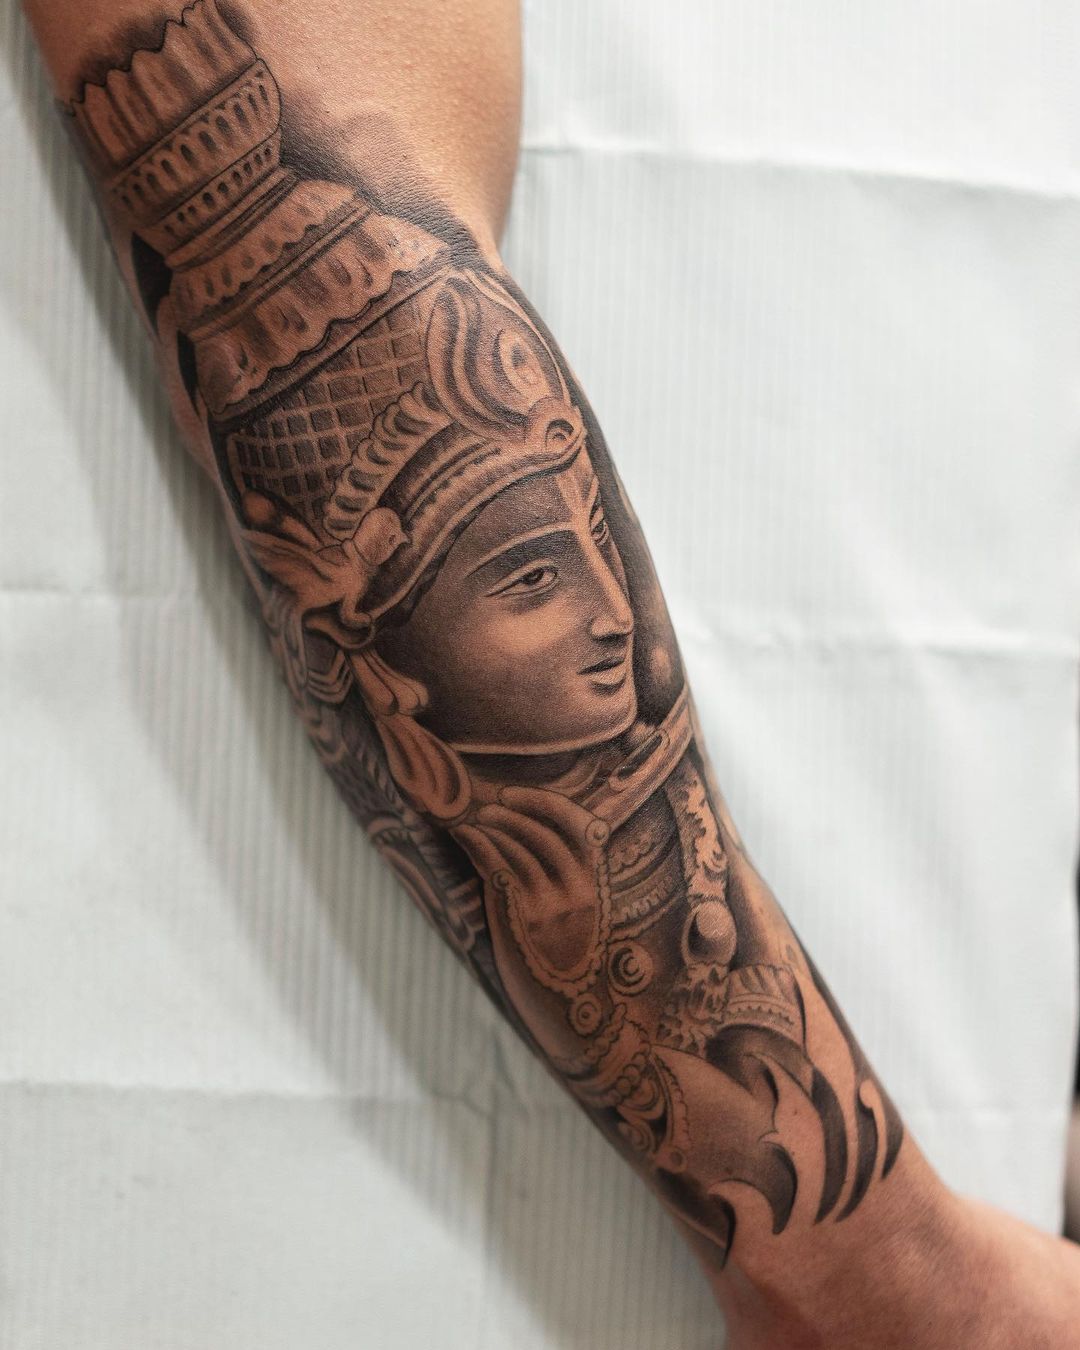 krishna tattoo hand - Wittyduck